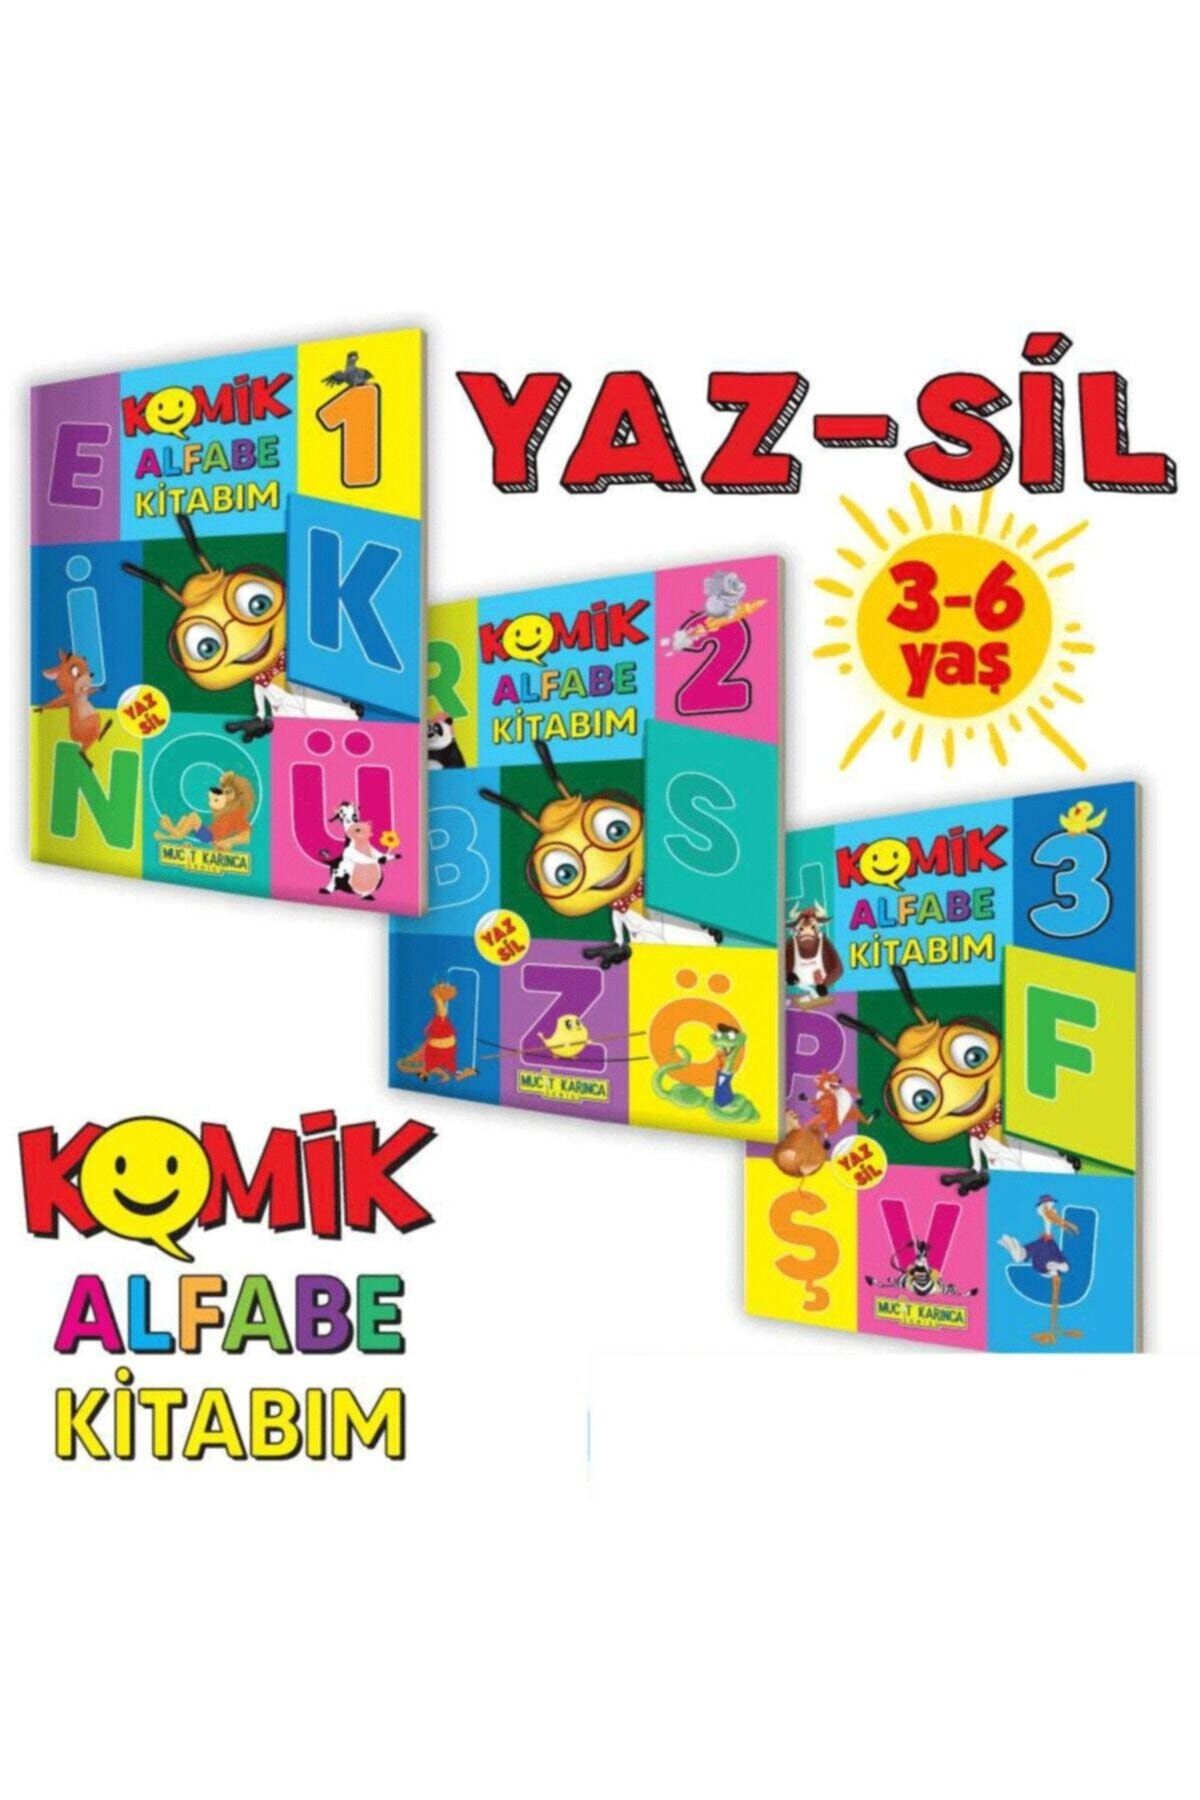 Yükselen Zeka Yayınları 3-6 Yaş Yaz-sil Komik Alfabe Kitabım (Sesli Kitaplar) - Etkinlik Seti